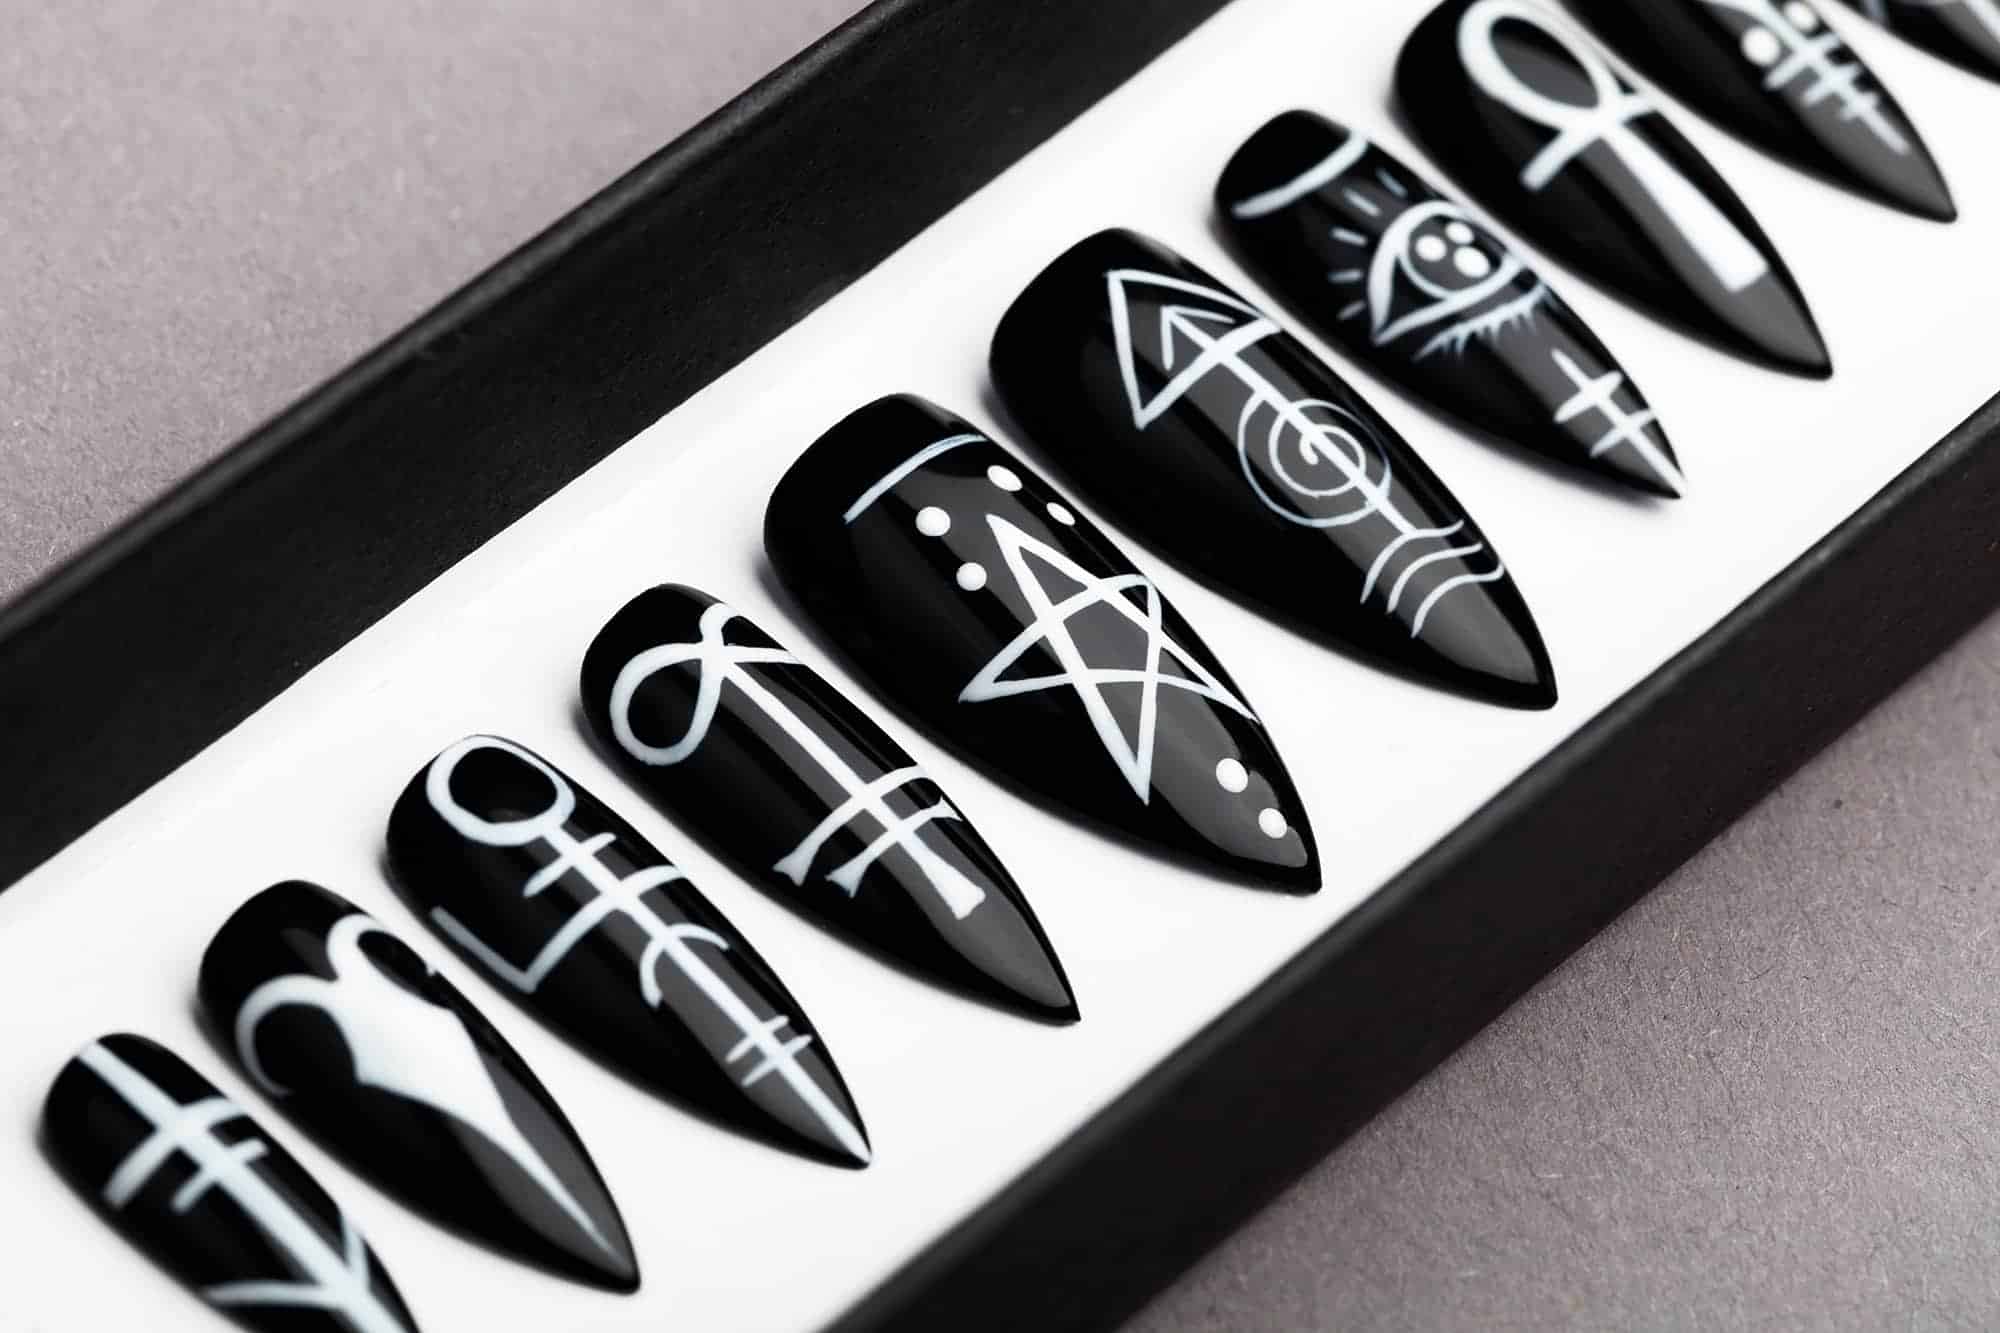 Sigil Press on Nails, Occult signs | Black Nails | Hand painted Nail Art | Fake Nails | False Nails | Black Magic